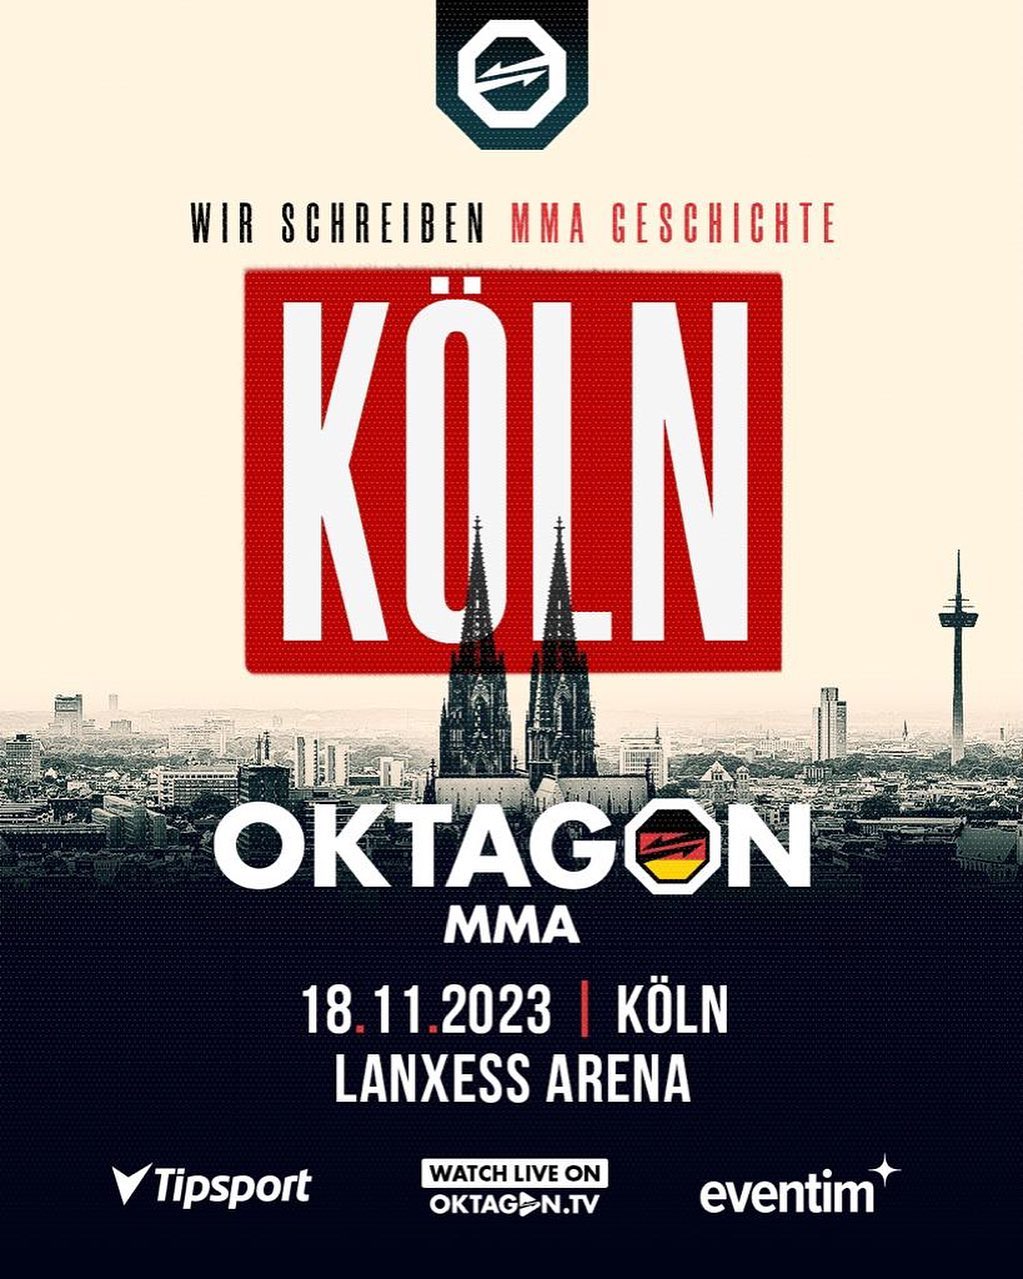 Oktagon Köln | 18.11.2023 - www.fightevents.de